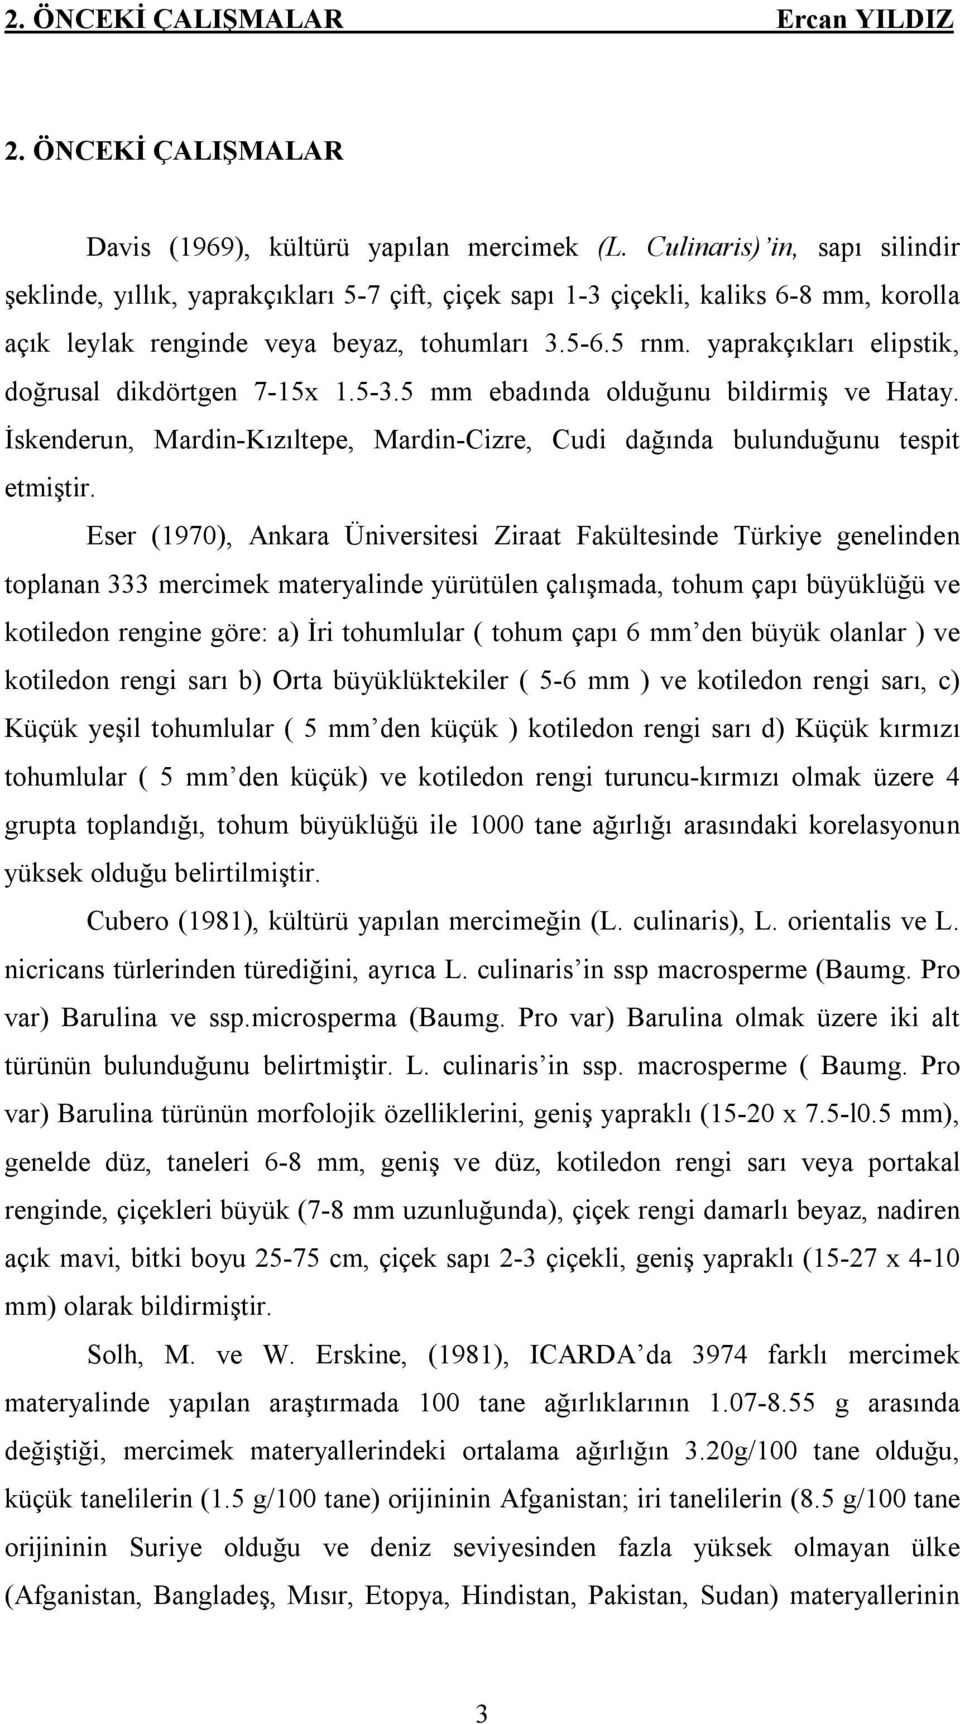 yaprakçıkları elipstik, doğrusal dikdörtgen 7-15x 1.5-3.5 mm ebadında olduğunu bildirmiş ve Hatay. İskenderun, Mardin-Kızıltepe, Mardin-Cizre, Cudi dağında bulunduğunu tespit etmiştir.